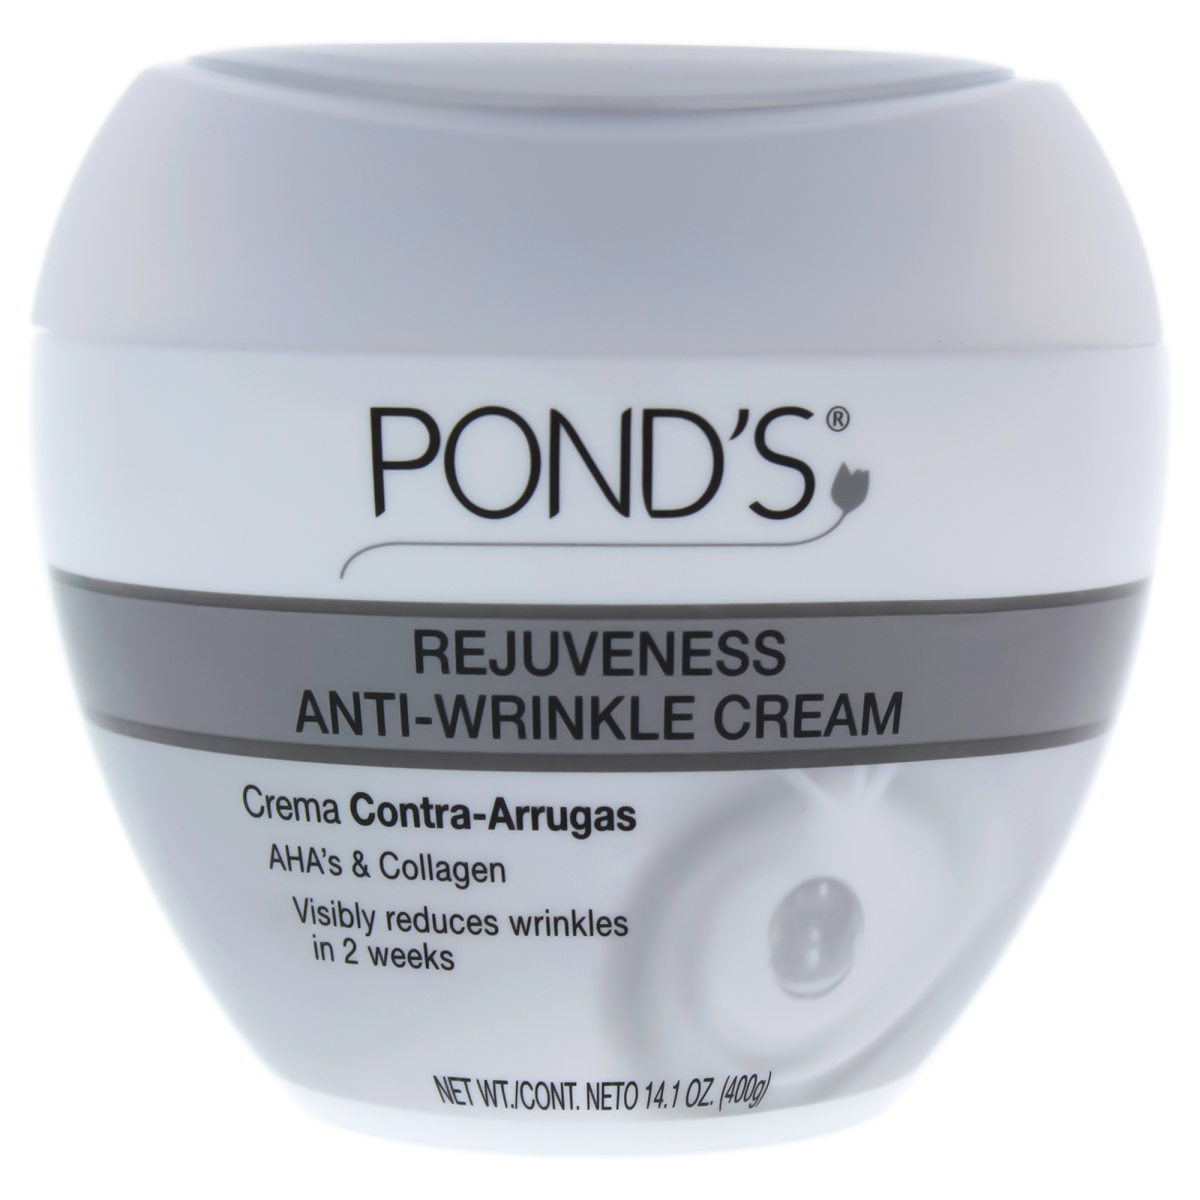 I0084311 Rejuveness Anti-wrinkle Cream For Women - 14.1 Oz